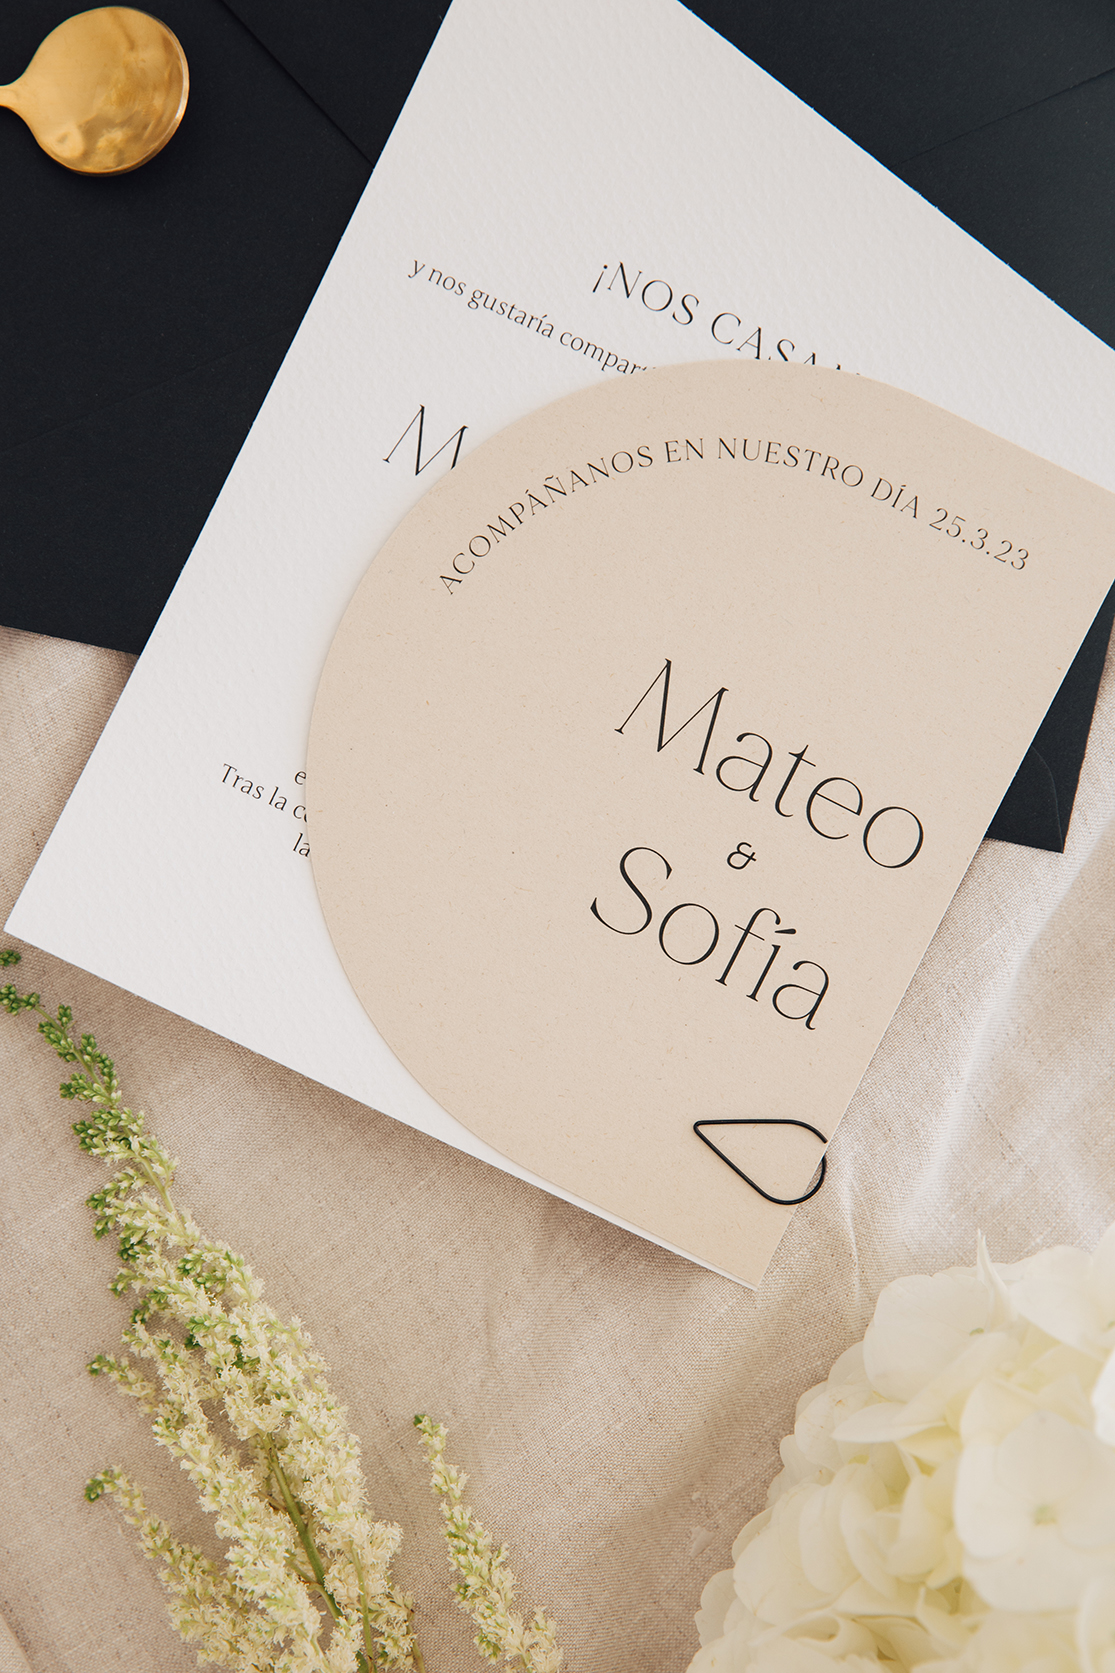 Invitación de boda minimalista y personalizada en tonos crema.